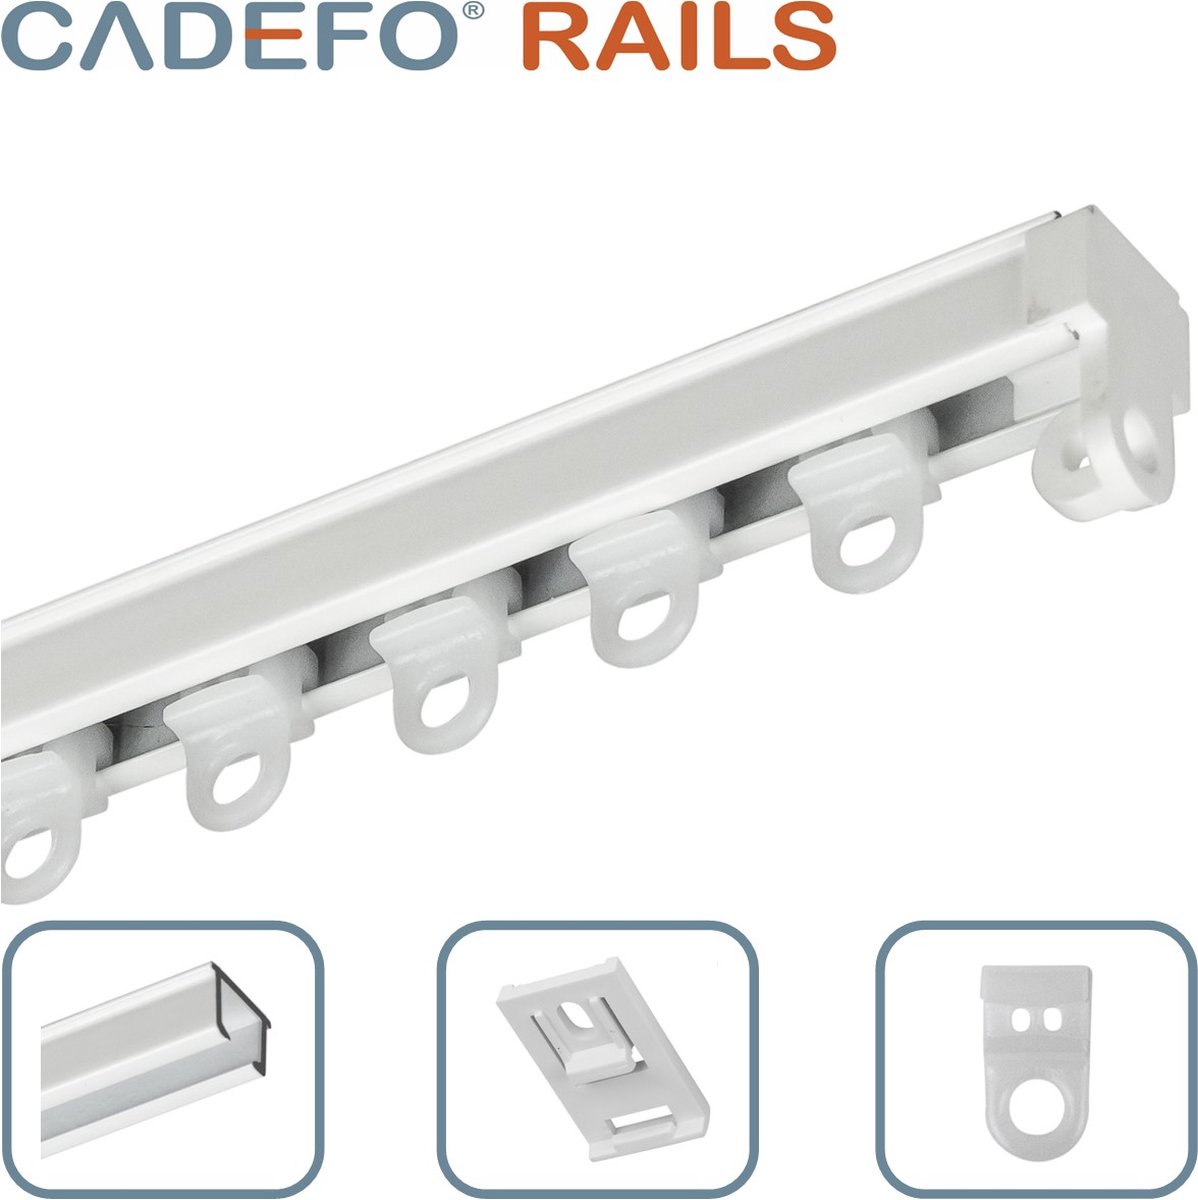 CADEFO RAILS (151 - 200 cm) Gordijnrails - Compleet op maat! - UIT 1 STUK - Leverbaar tot 6 meter - Plafondbevestiging - Lengte 191 cm